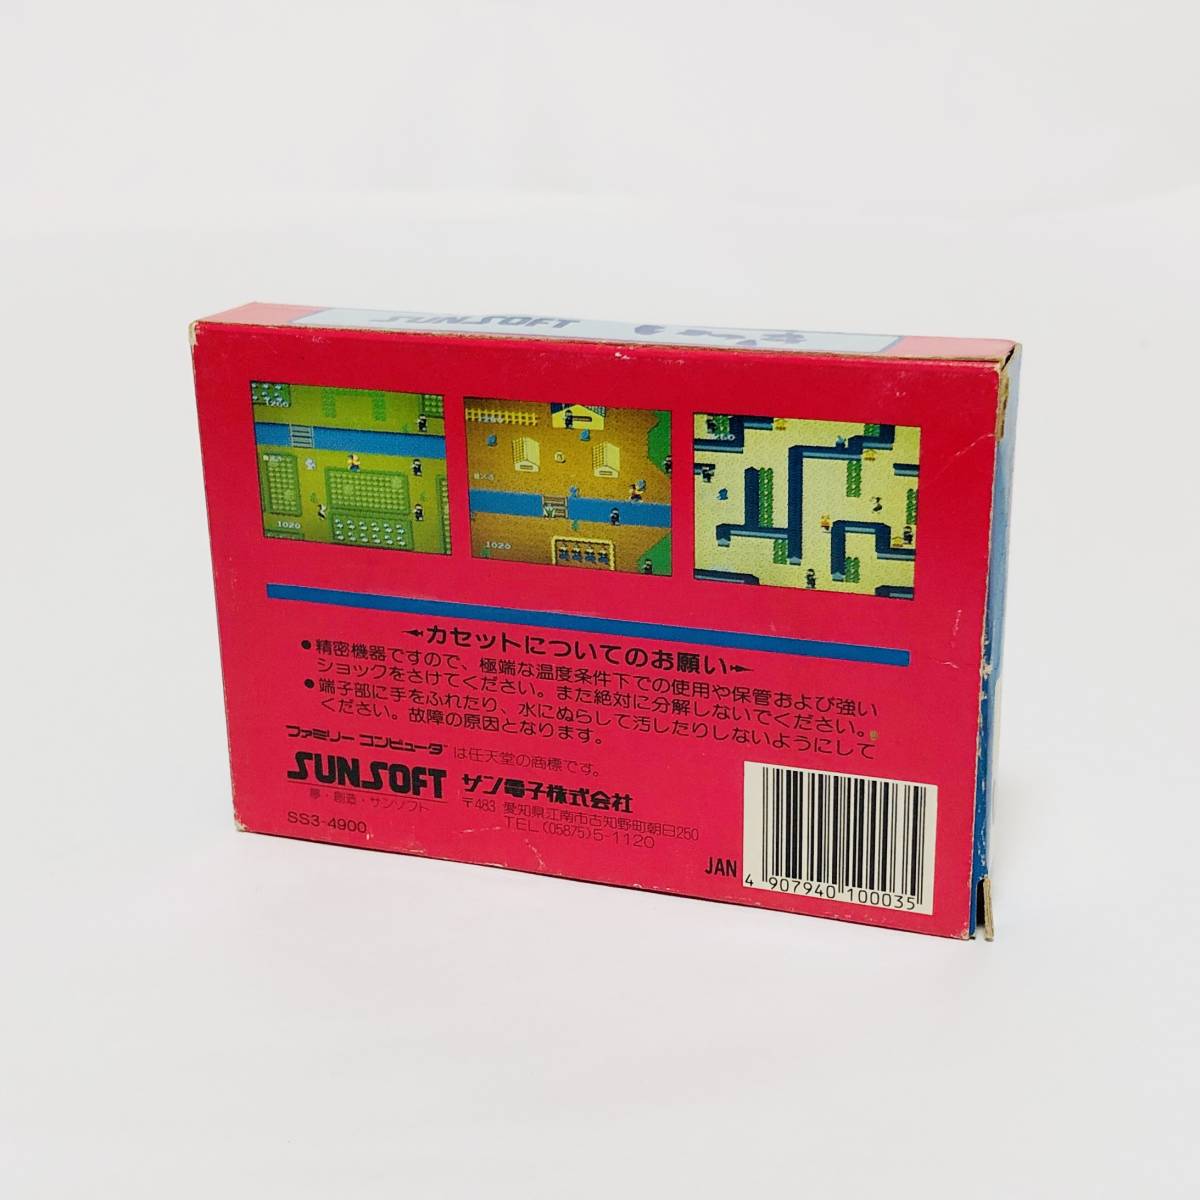 【送料無料】 ファミコン いっき 箱説付き 痛みあり サンソフト サン電子 レトロゲーム Nintendo Famicom Ikki CIB Sunsoft_画像3